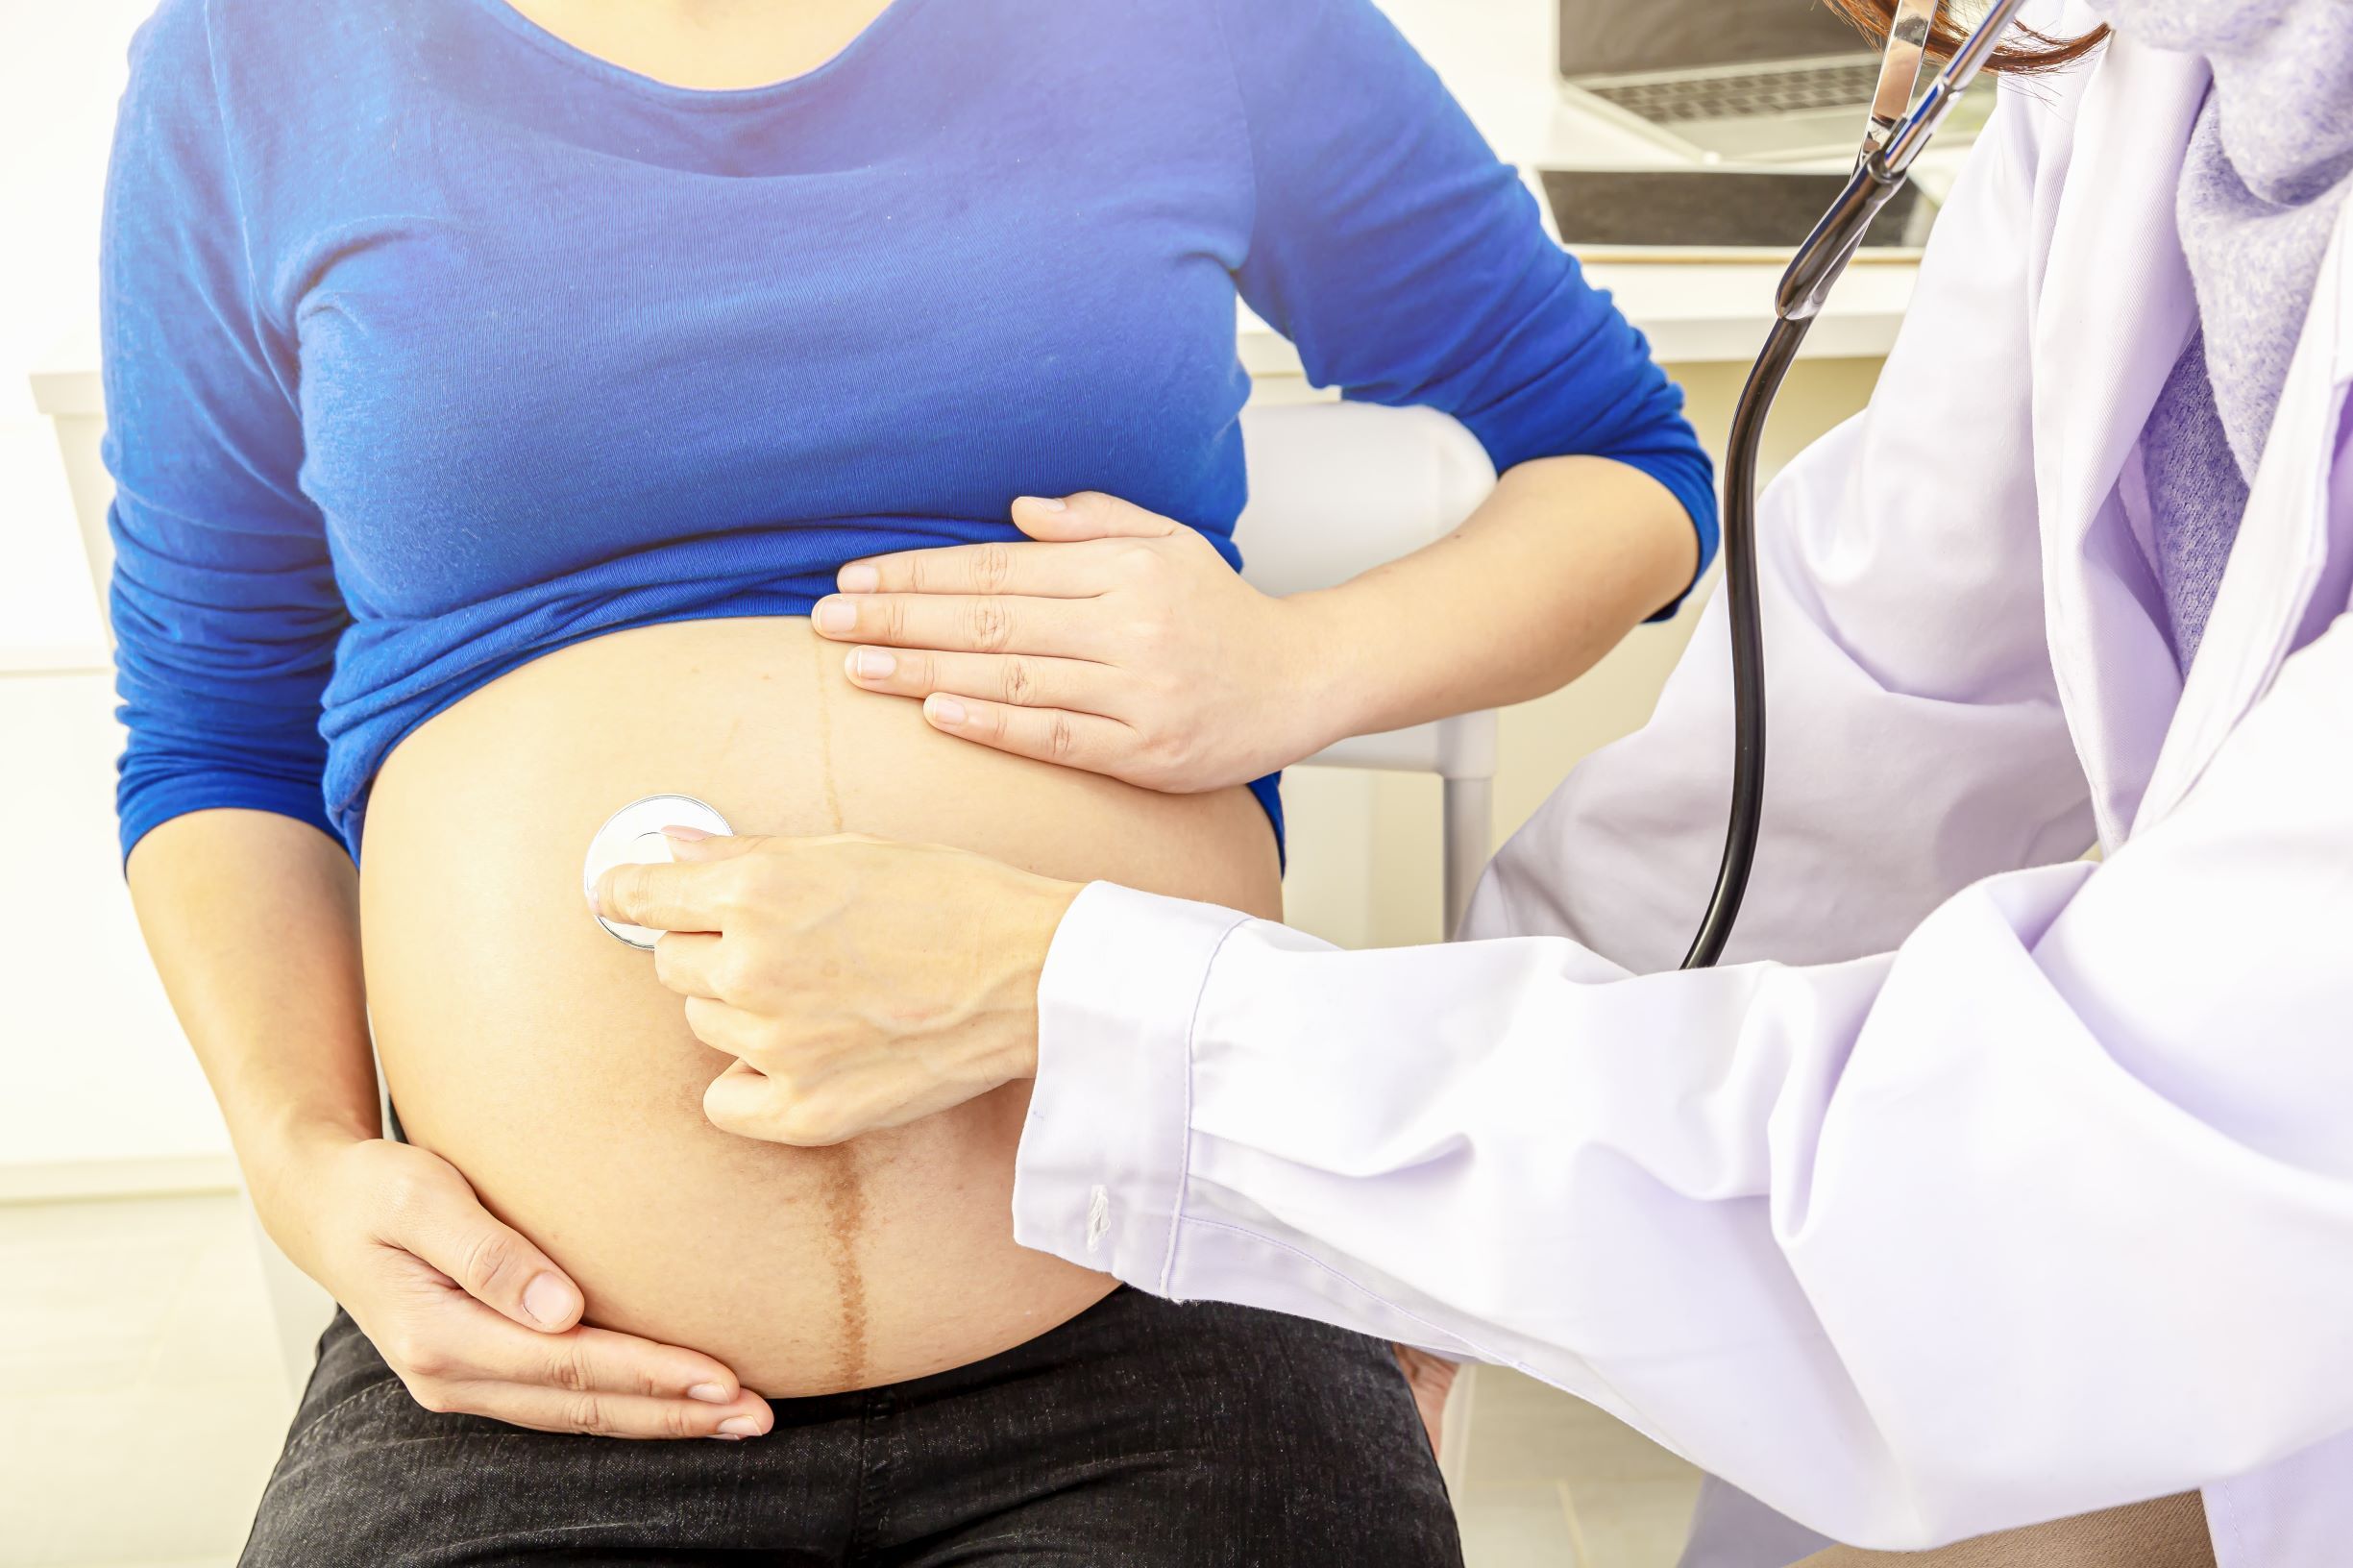 NIK krytycznie o opiece nad pacjentkami w przypadku poronień i martwych urodzeń